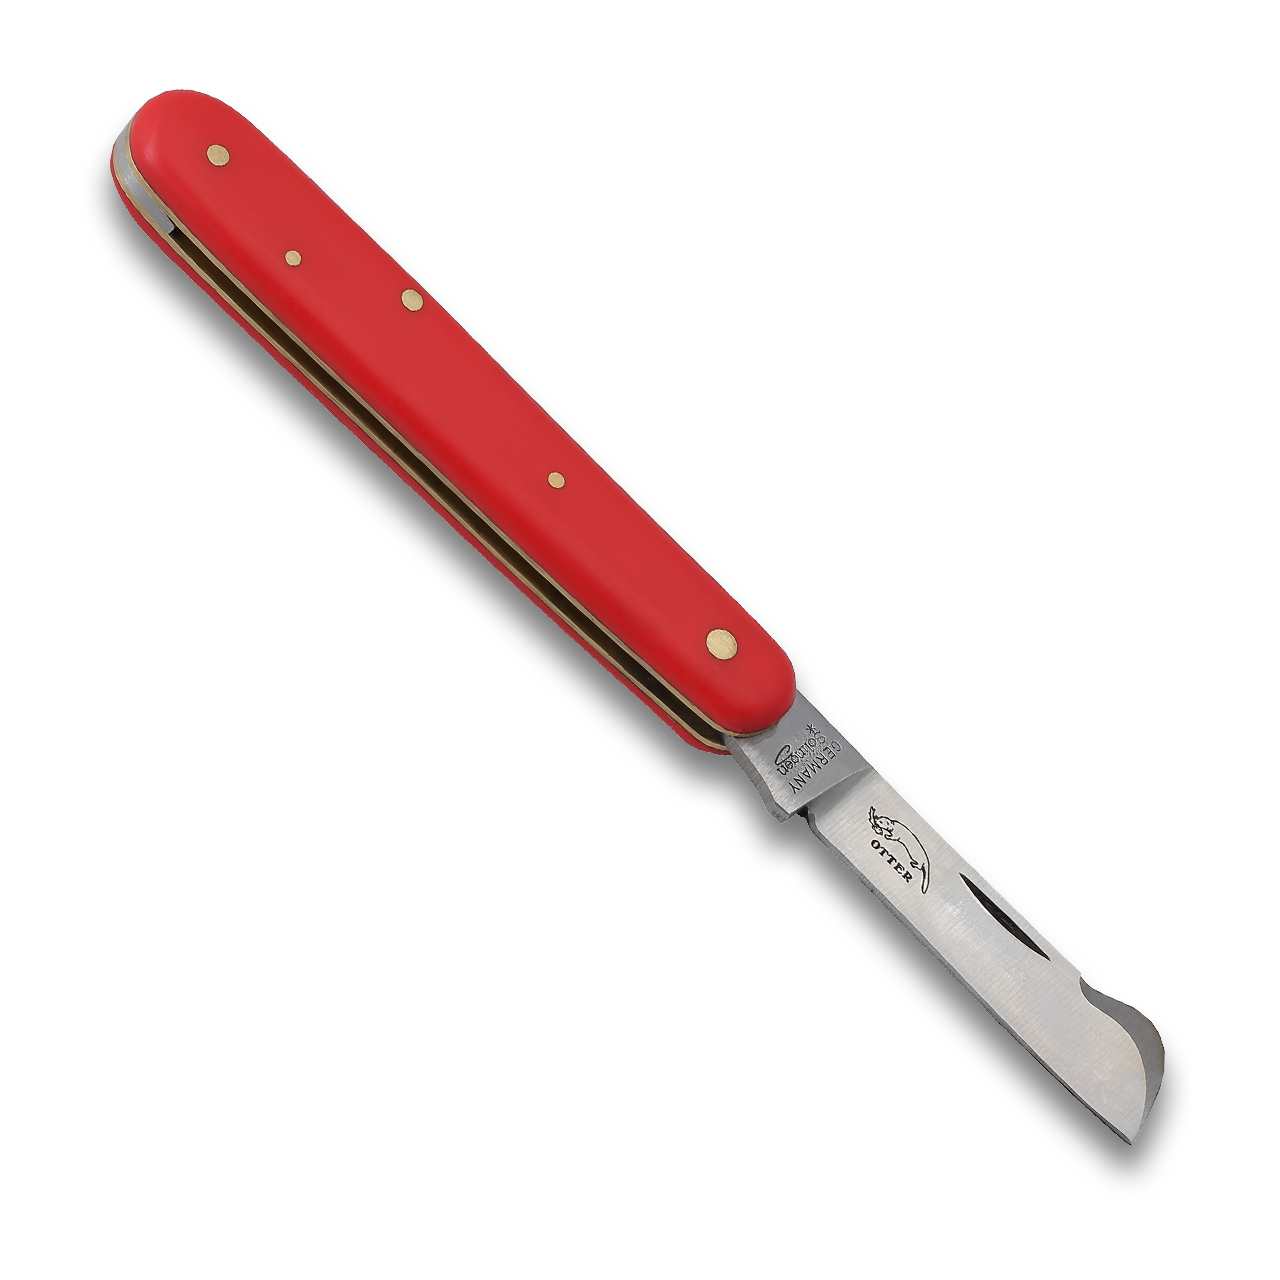 OTTER-Messer Little Doctor Pocket Knife knives BRK-OTT175KNGR